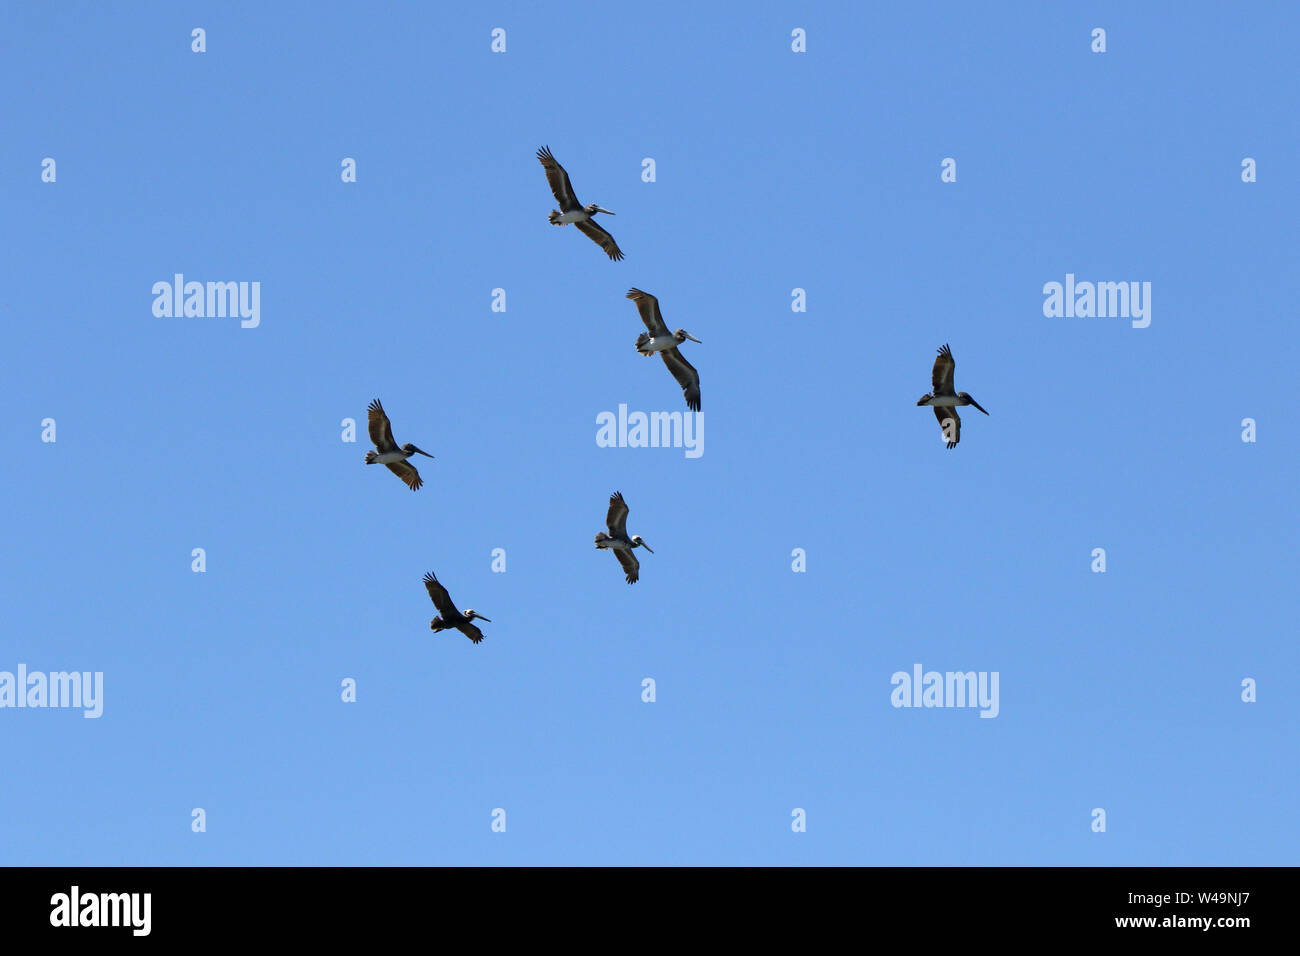 Media docena de pelícanos deslizándose en un cielo azul. Foto de stock